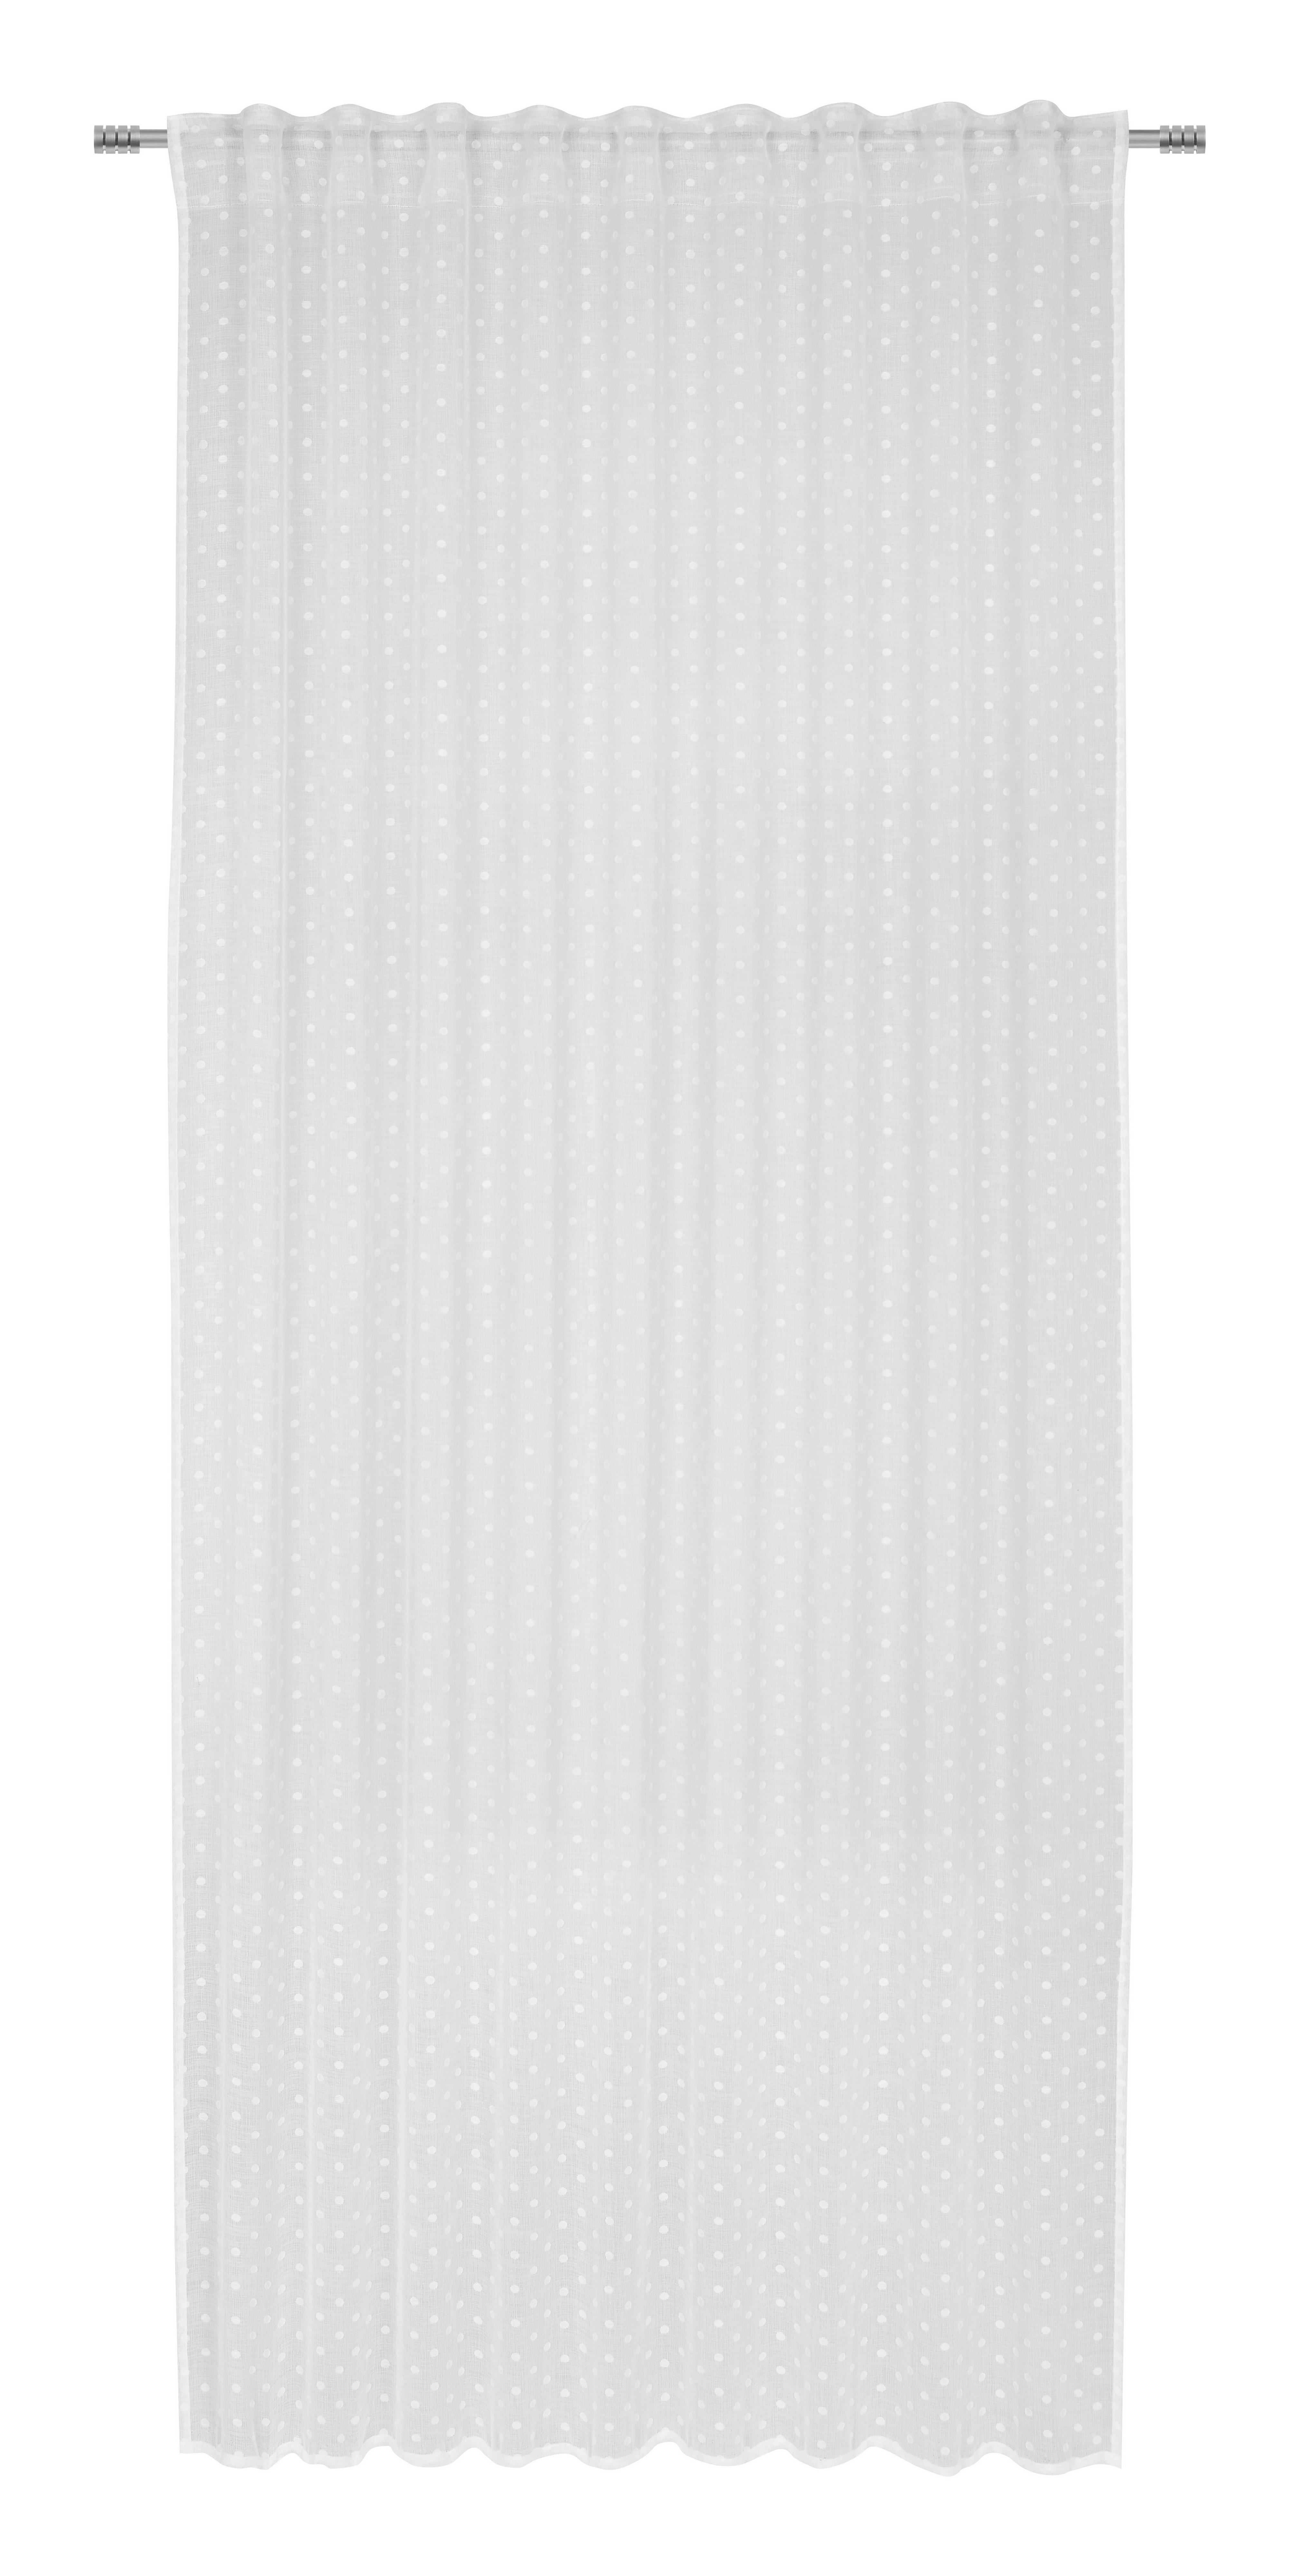 Készfüggöny Sherly 140/245cm - Fehér, konvencionális, Textil (140/245cm) - Modern Living